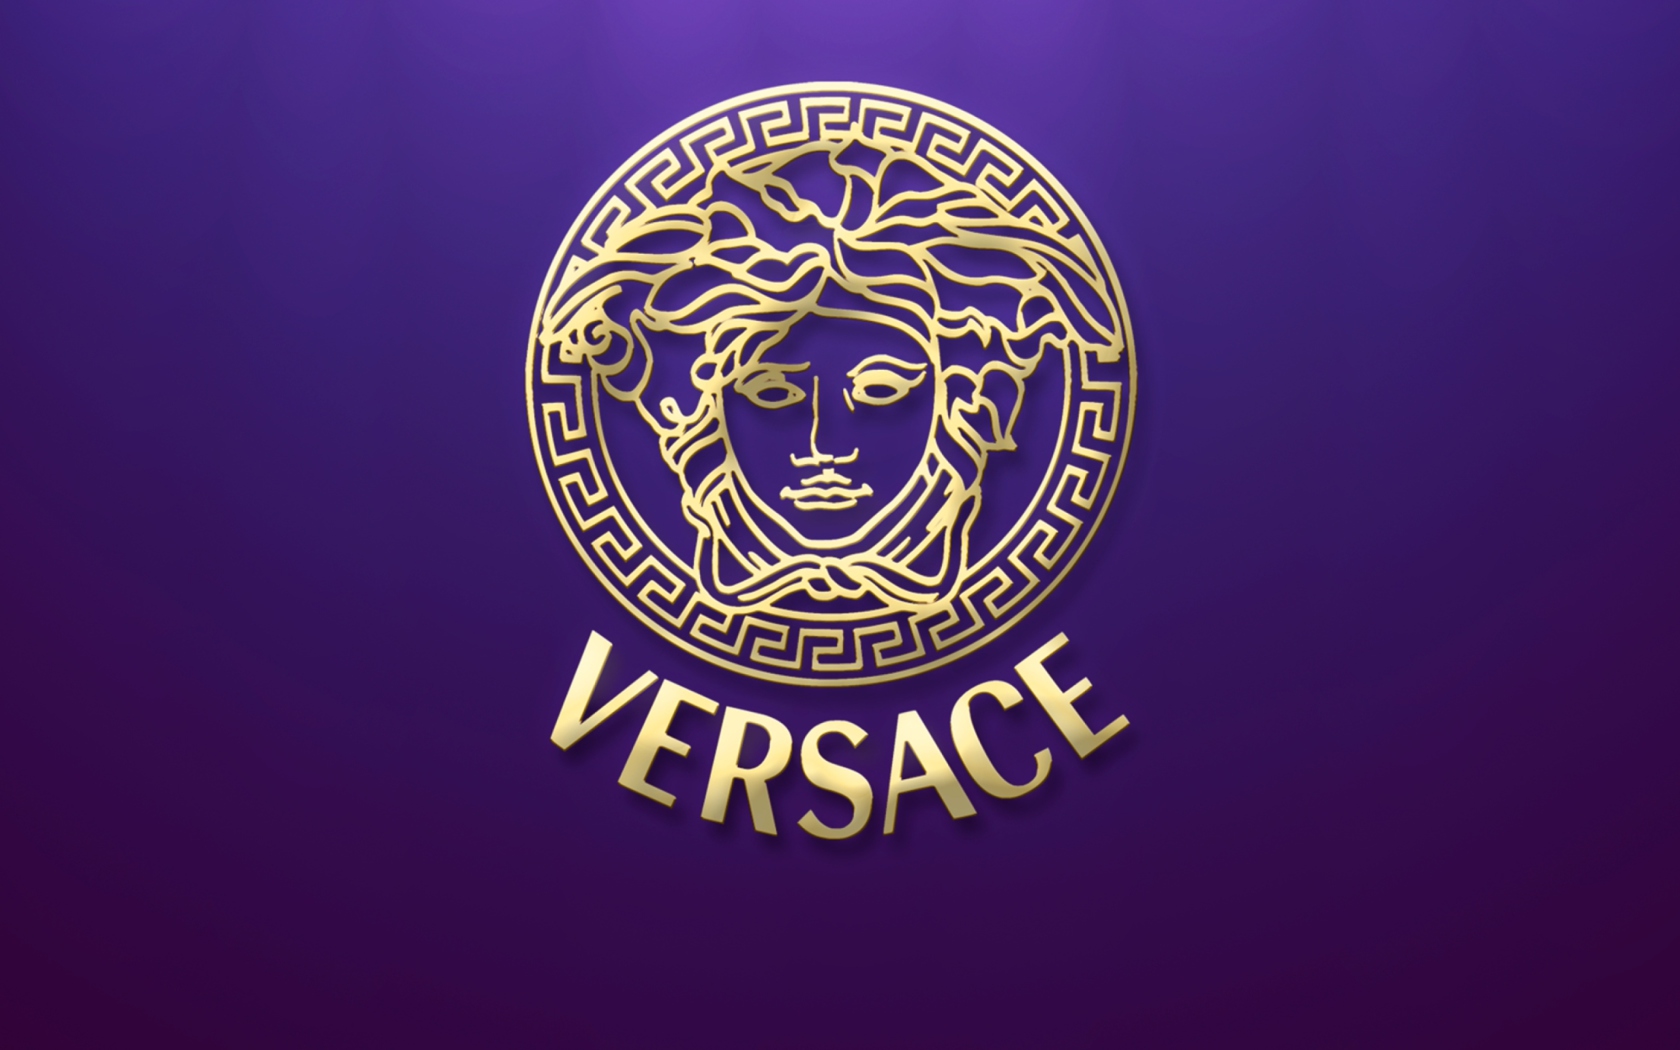 Обои Versace 1680x1050